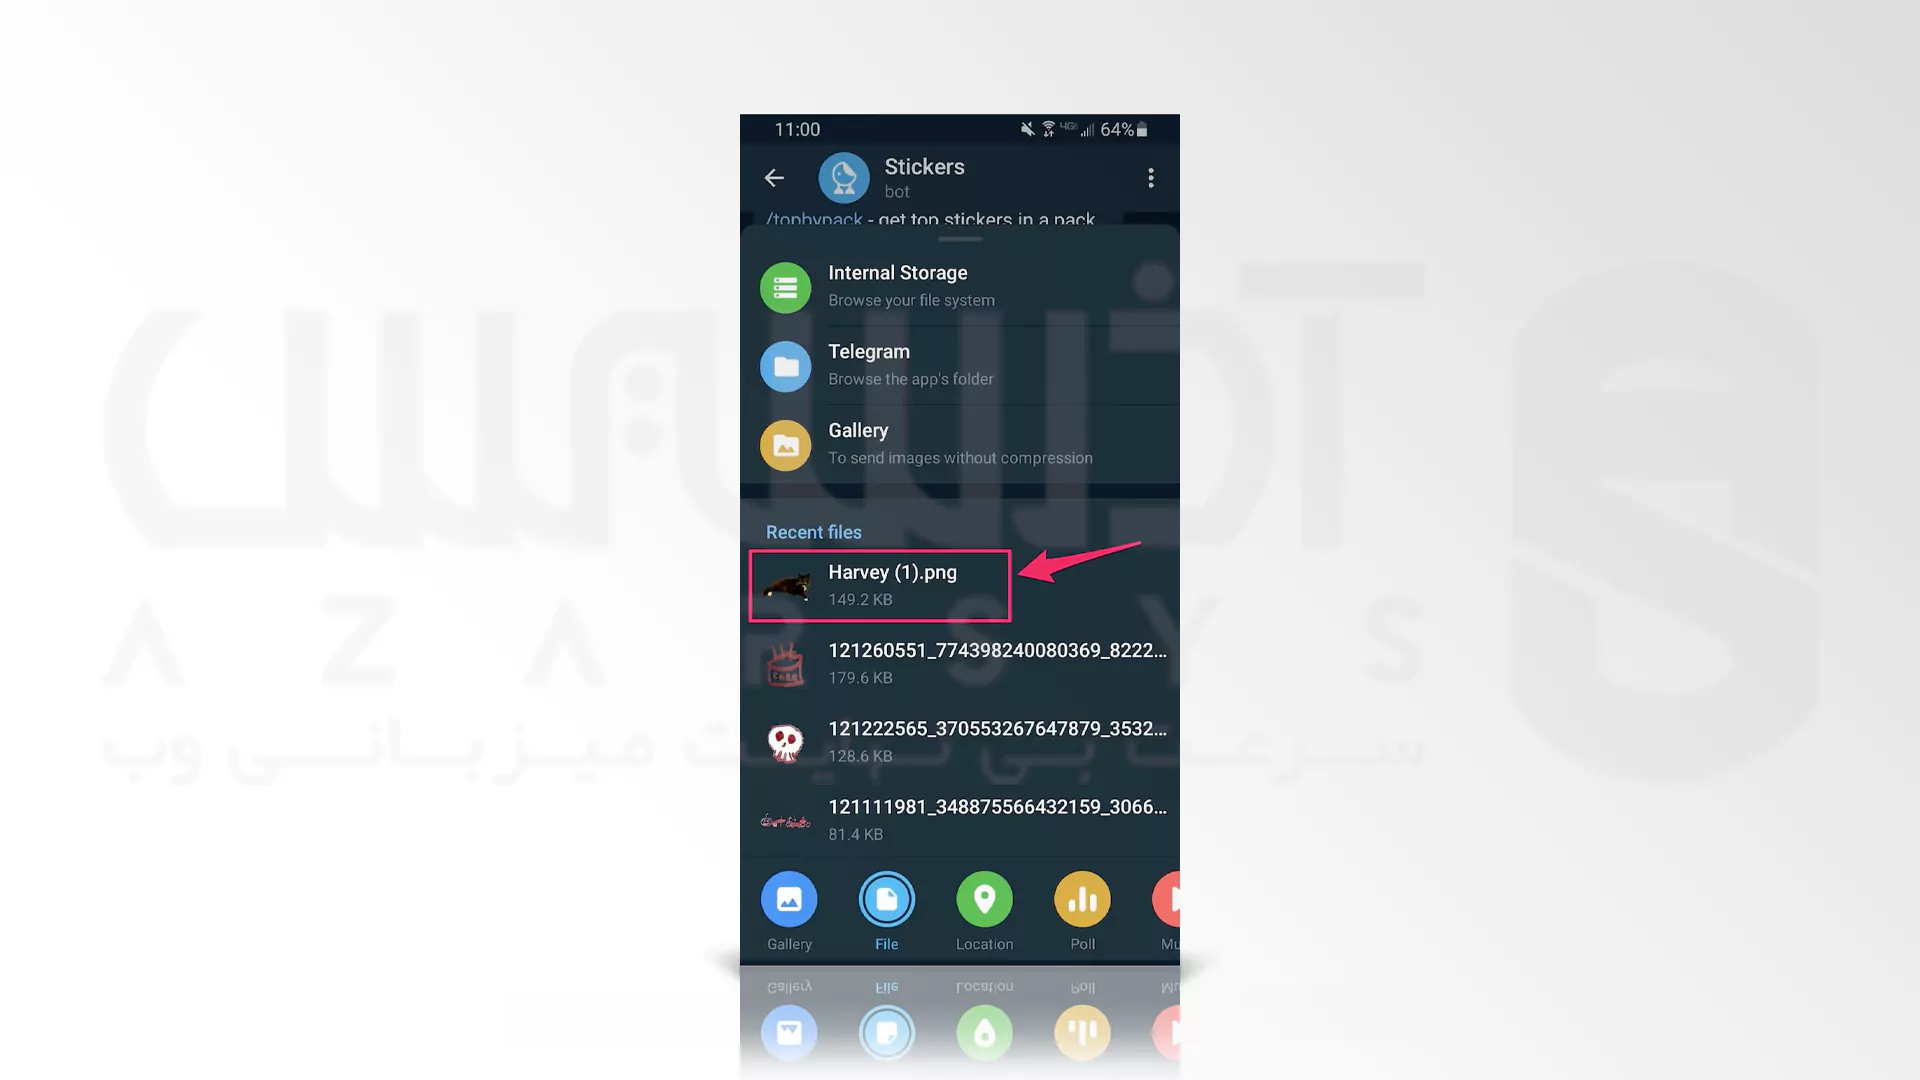 افزودن پک و ساخت استیکر در تلگرام